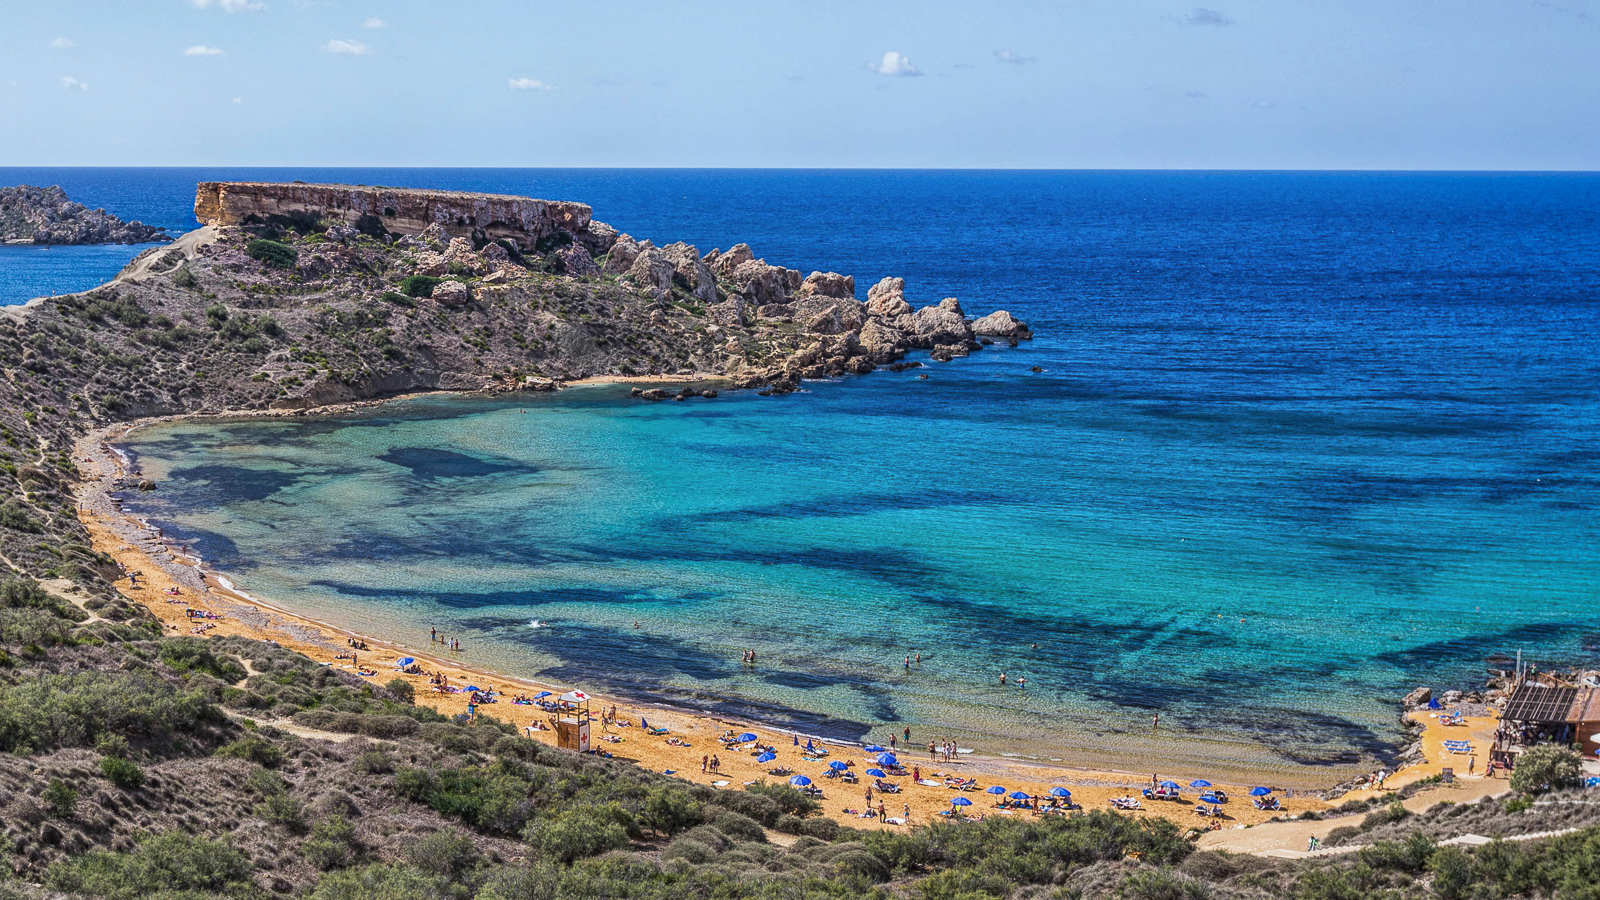 Estate 2021, sono 11 le spiagge Bandiera Blu a Malta